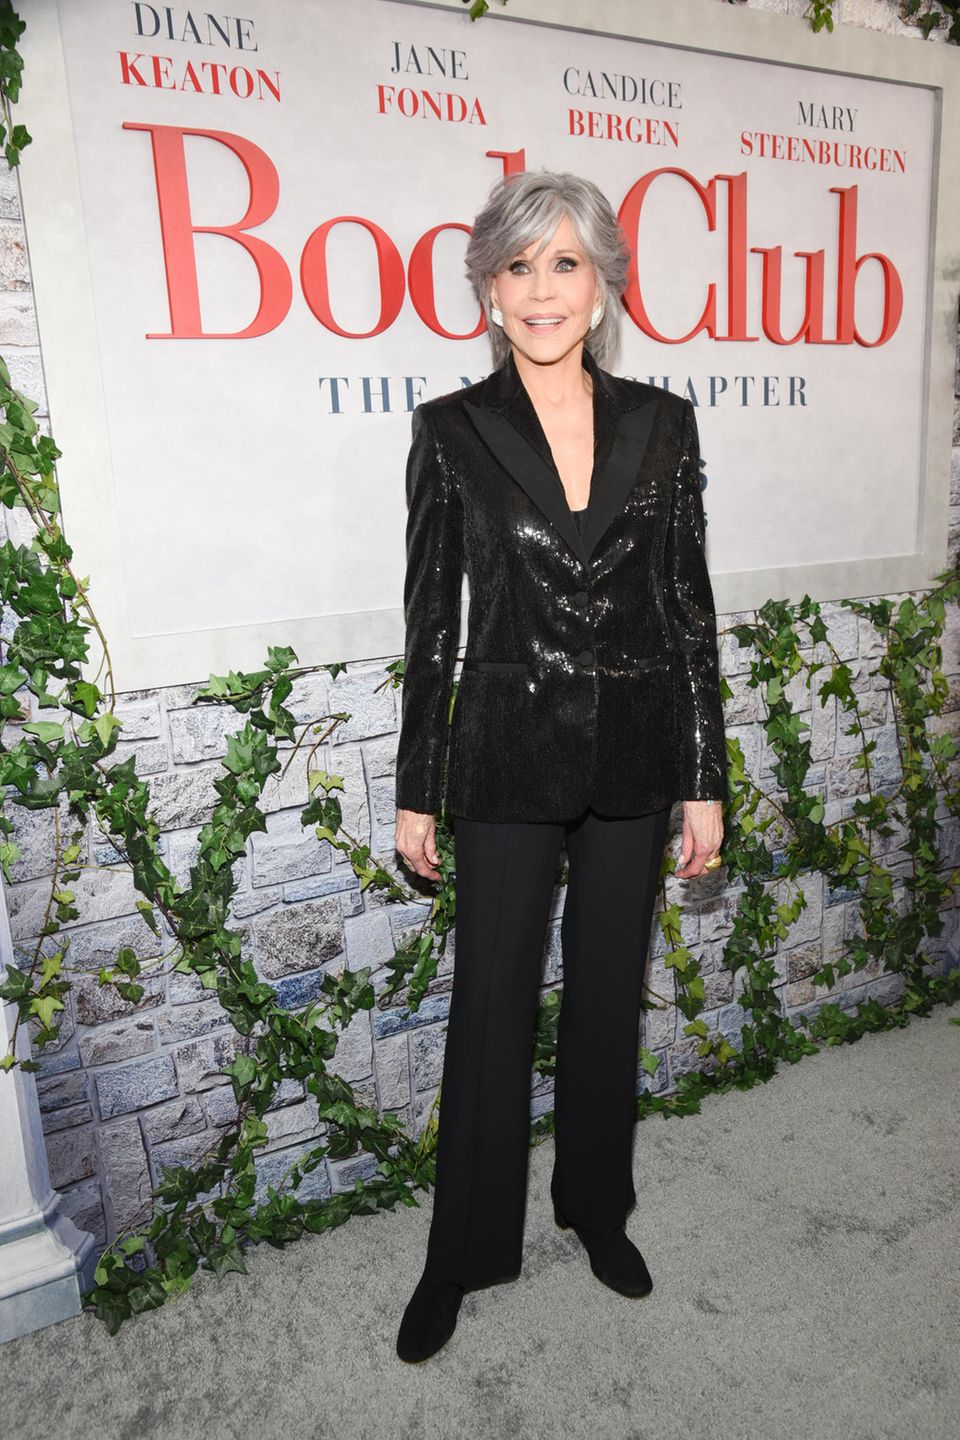 Für die Premiere von "Book Club: The Next Chapter" trägt Jane Fonda einen edlen Blazer mit Pailletten. Dazu kombiniert sie eine klassische schwarze Hose und schwarze Schuhe. Große, mit Strasssteinen besetzte Ohrringe runden den Look ab.